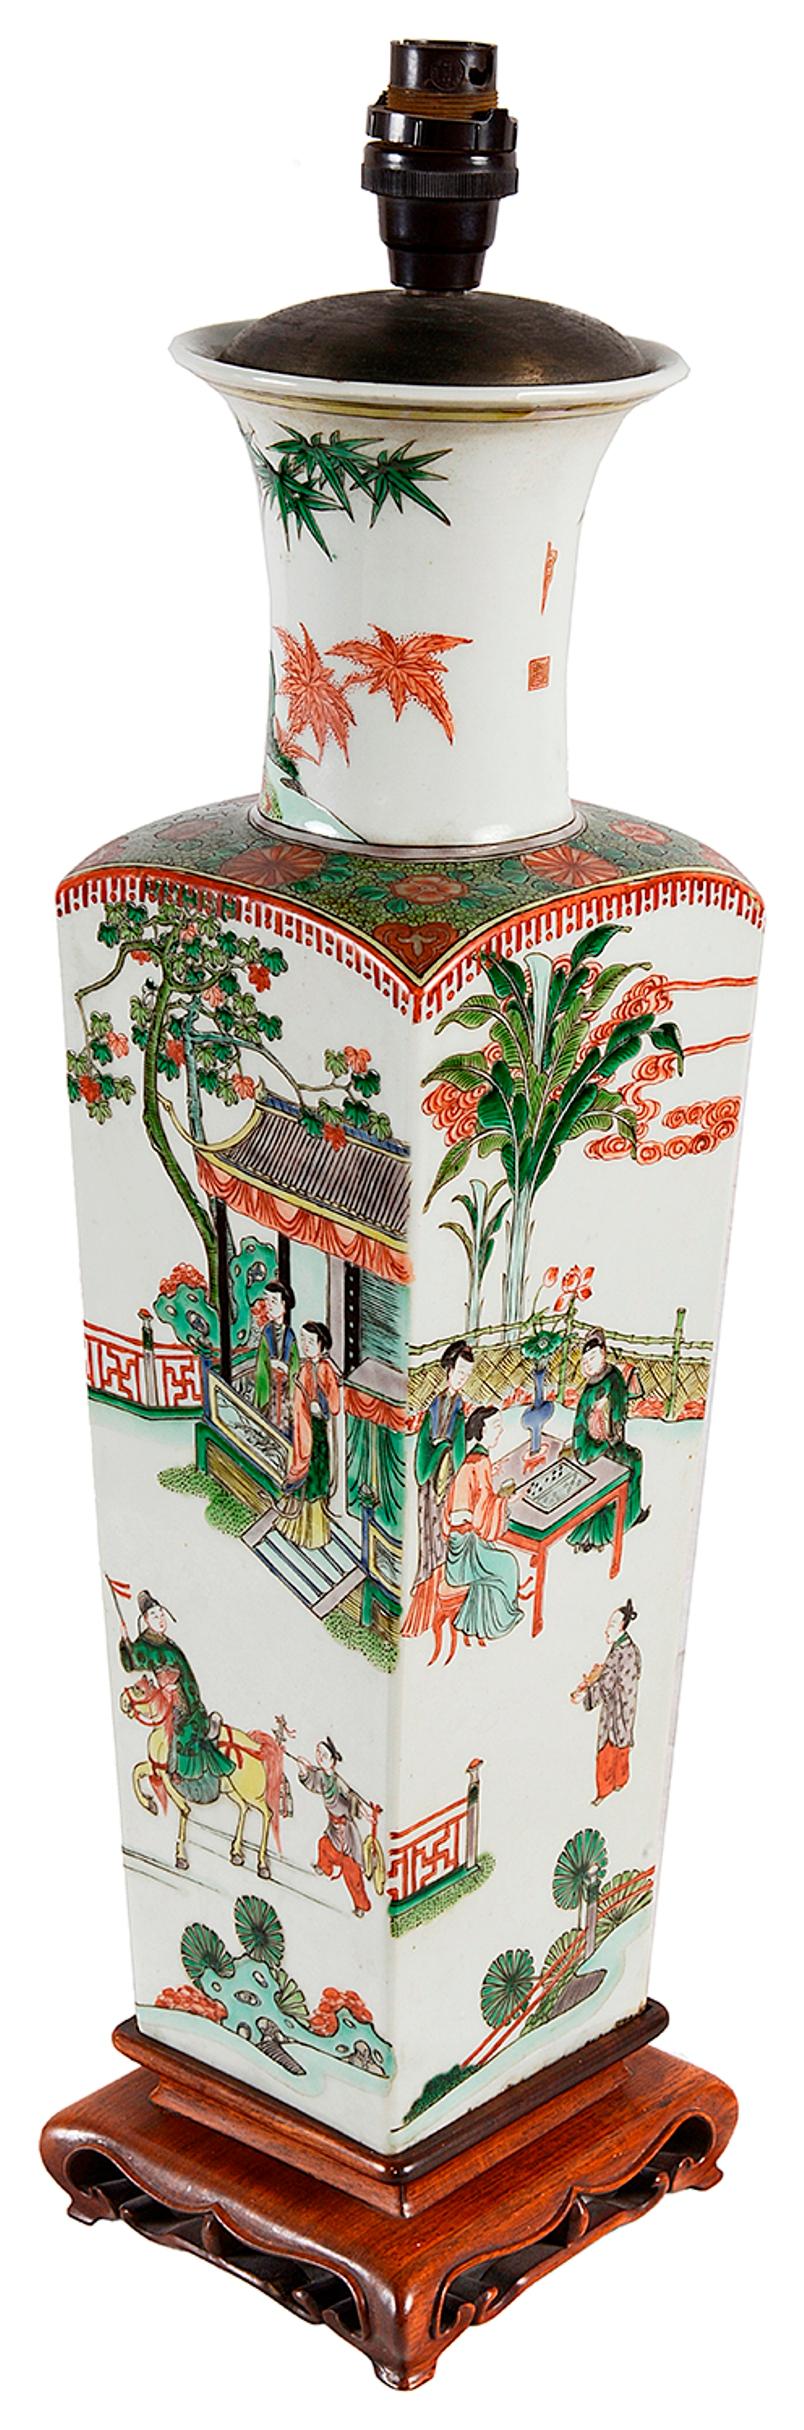 Eine sehr gute Qualität 18. Jahrhundert Stil chinesischen Famille verte Vase / Lampe. Mit kühnen klassischen chinesischen Szenen von Höflingen unter Pagodengebäuden und in Gärten bei Spielen und auf dem Pferderücken. Montiert auf einem geschnitzten